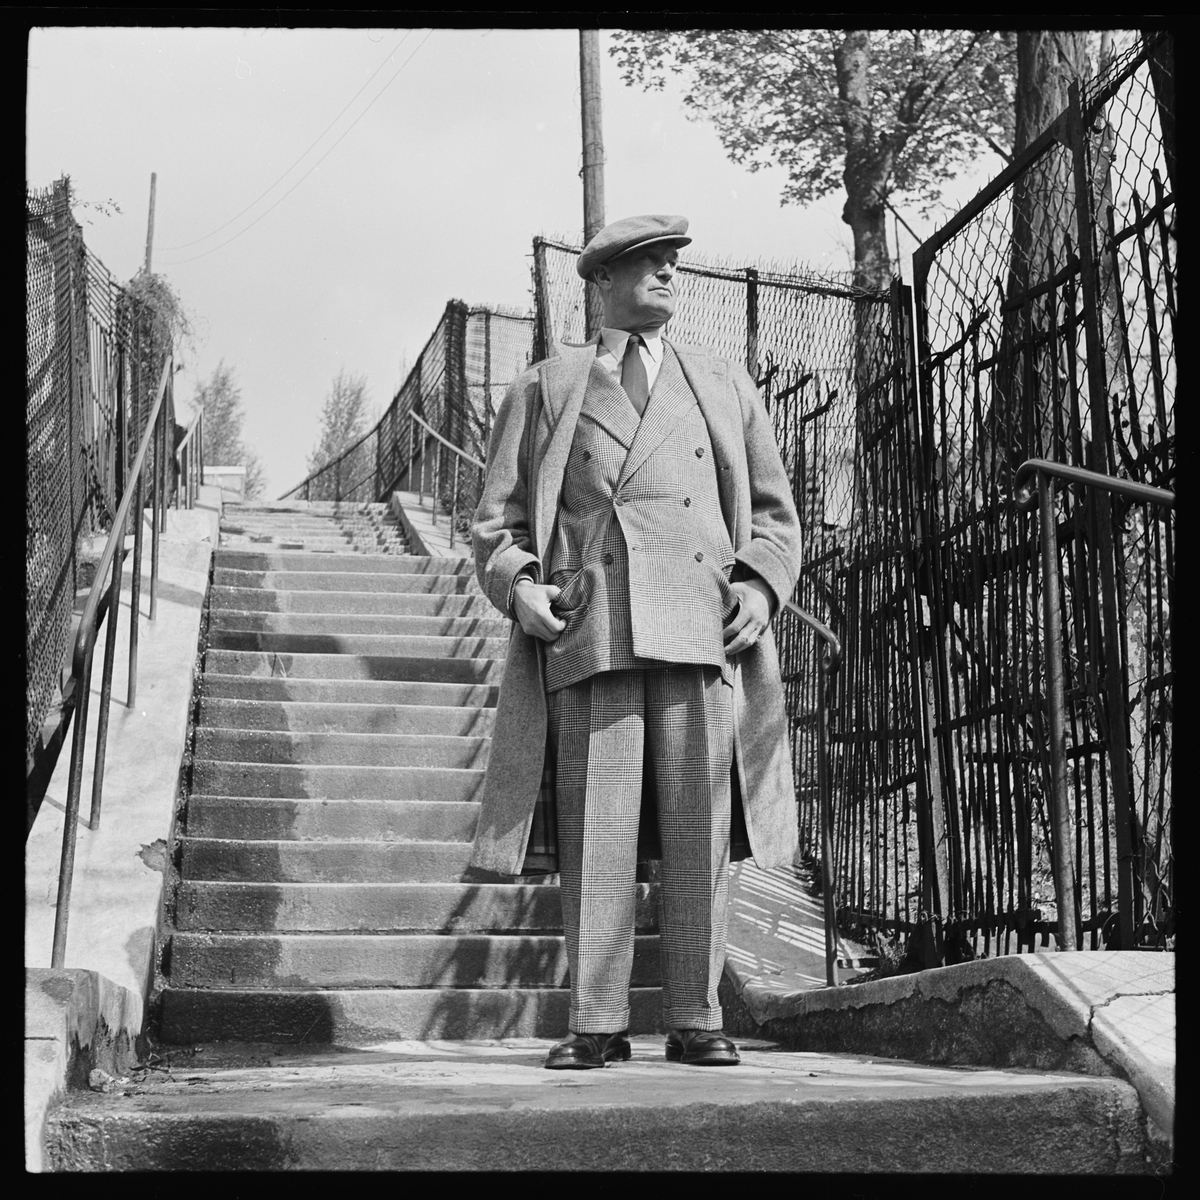 Maurice Chevalier i tweeddress og frakk fotografert i en trapp. 